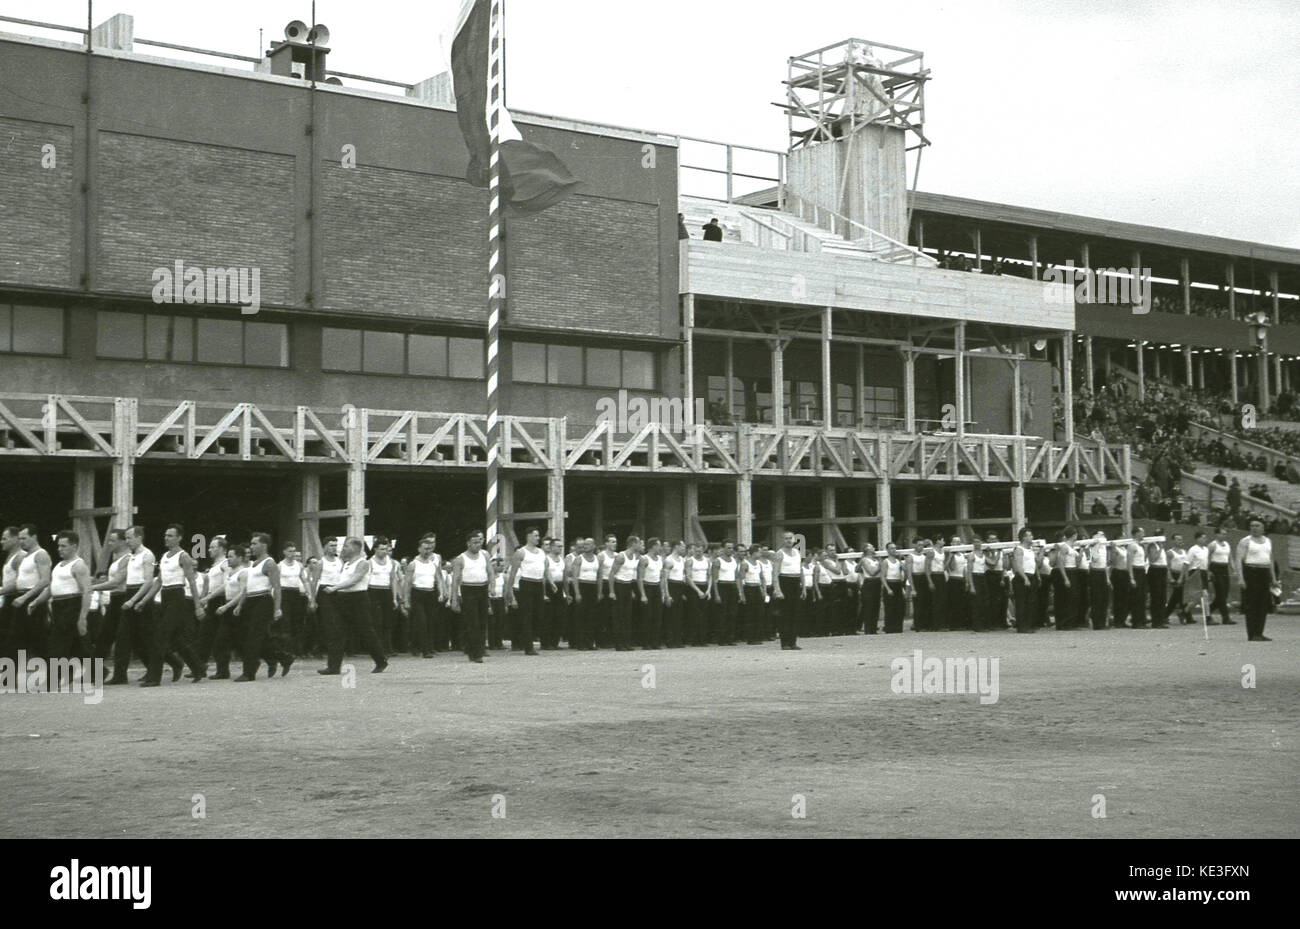 1938. Historische, Sport, männliche Teilnehmer an der massiven Stadion Strahov, Prag, Tschechoslowakei, der Teilnahme an der Internationalen Pan-Sokol Slet Festival. Stockfoto